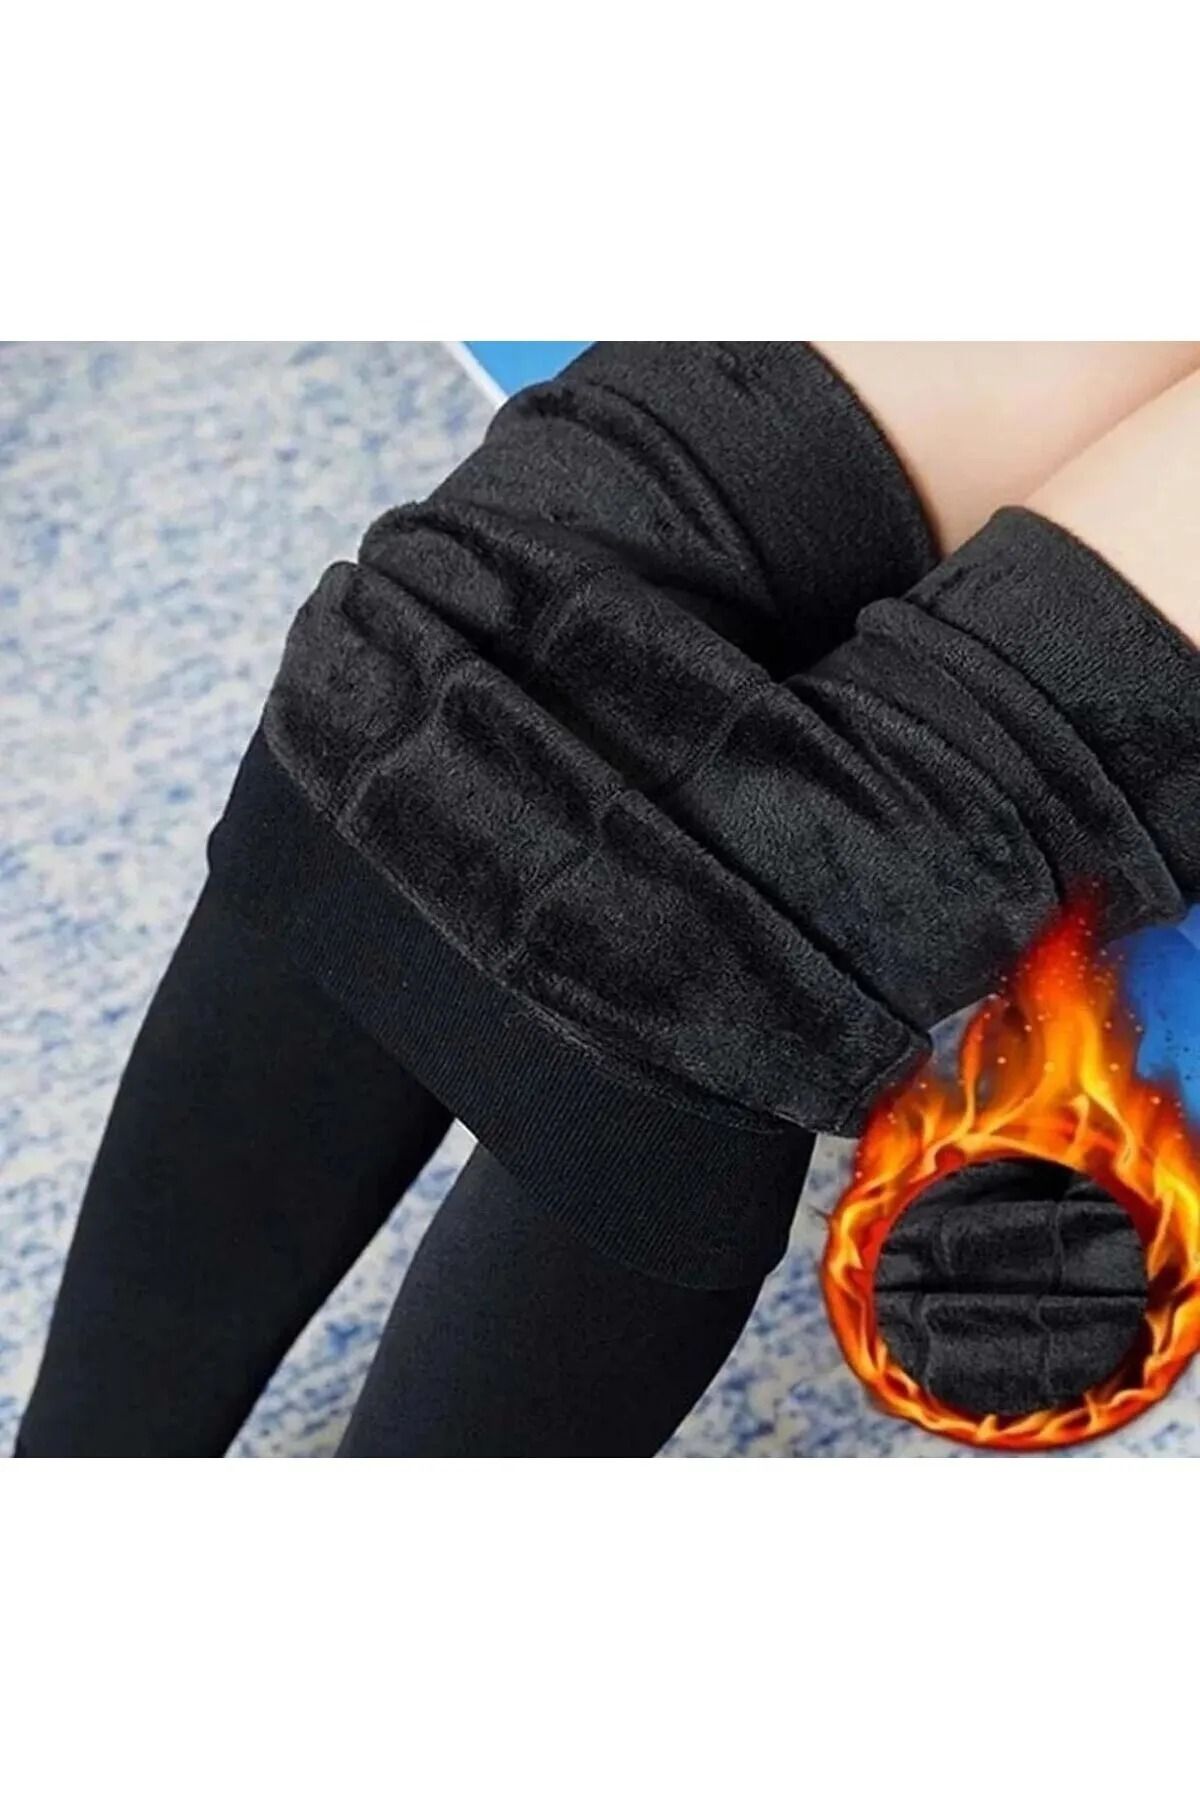 Romastory Winter Warm Women Velvet Elastic Leggings Pants (Black